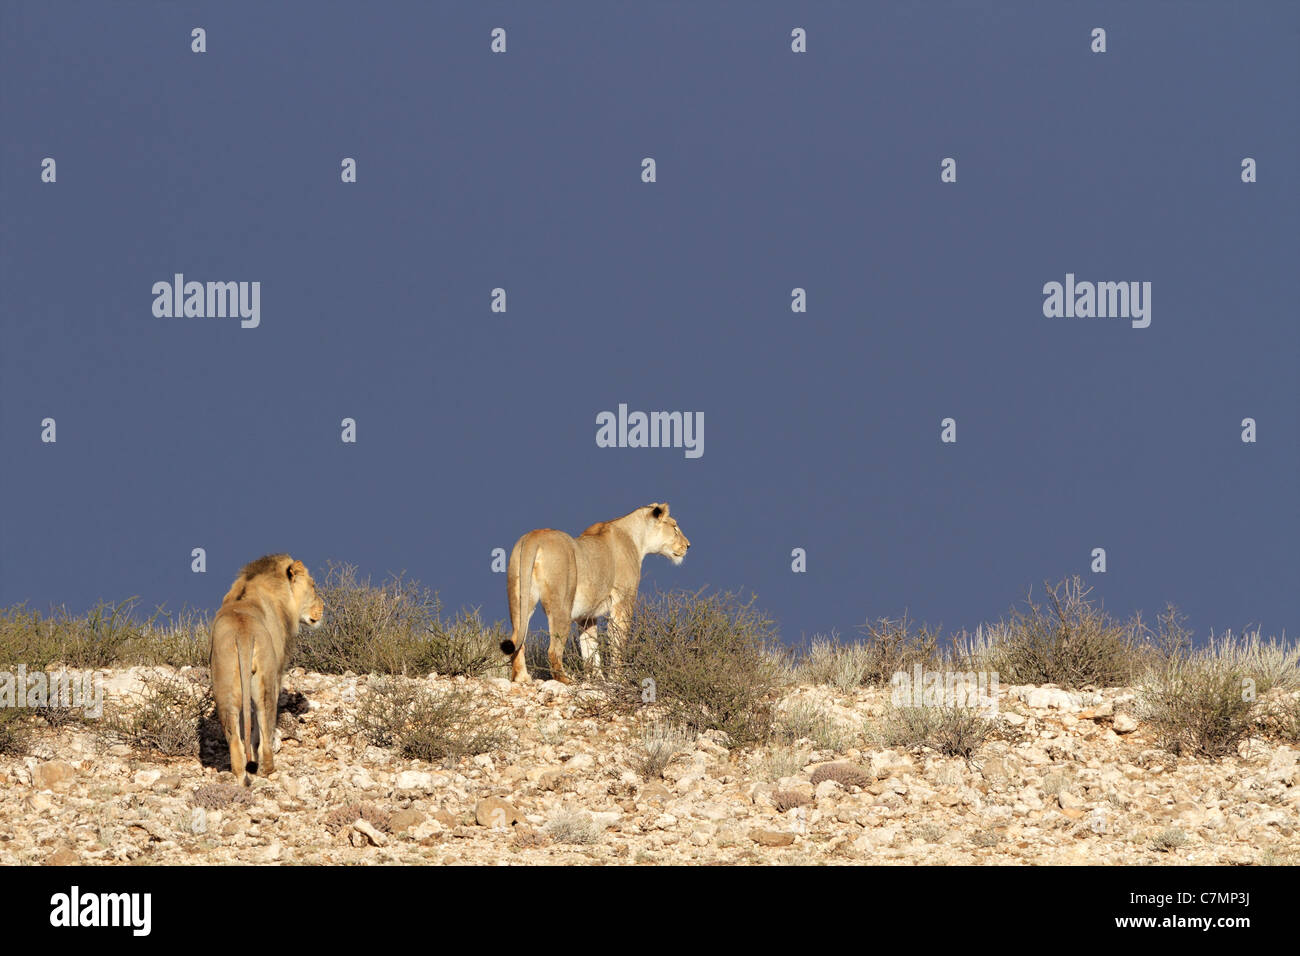 Deux d'Afrique lions (Panthera leo) Balade dans le paysage du désert du Kalahari, Afrique du Sud Banque D'Images